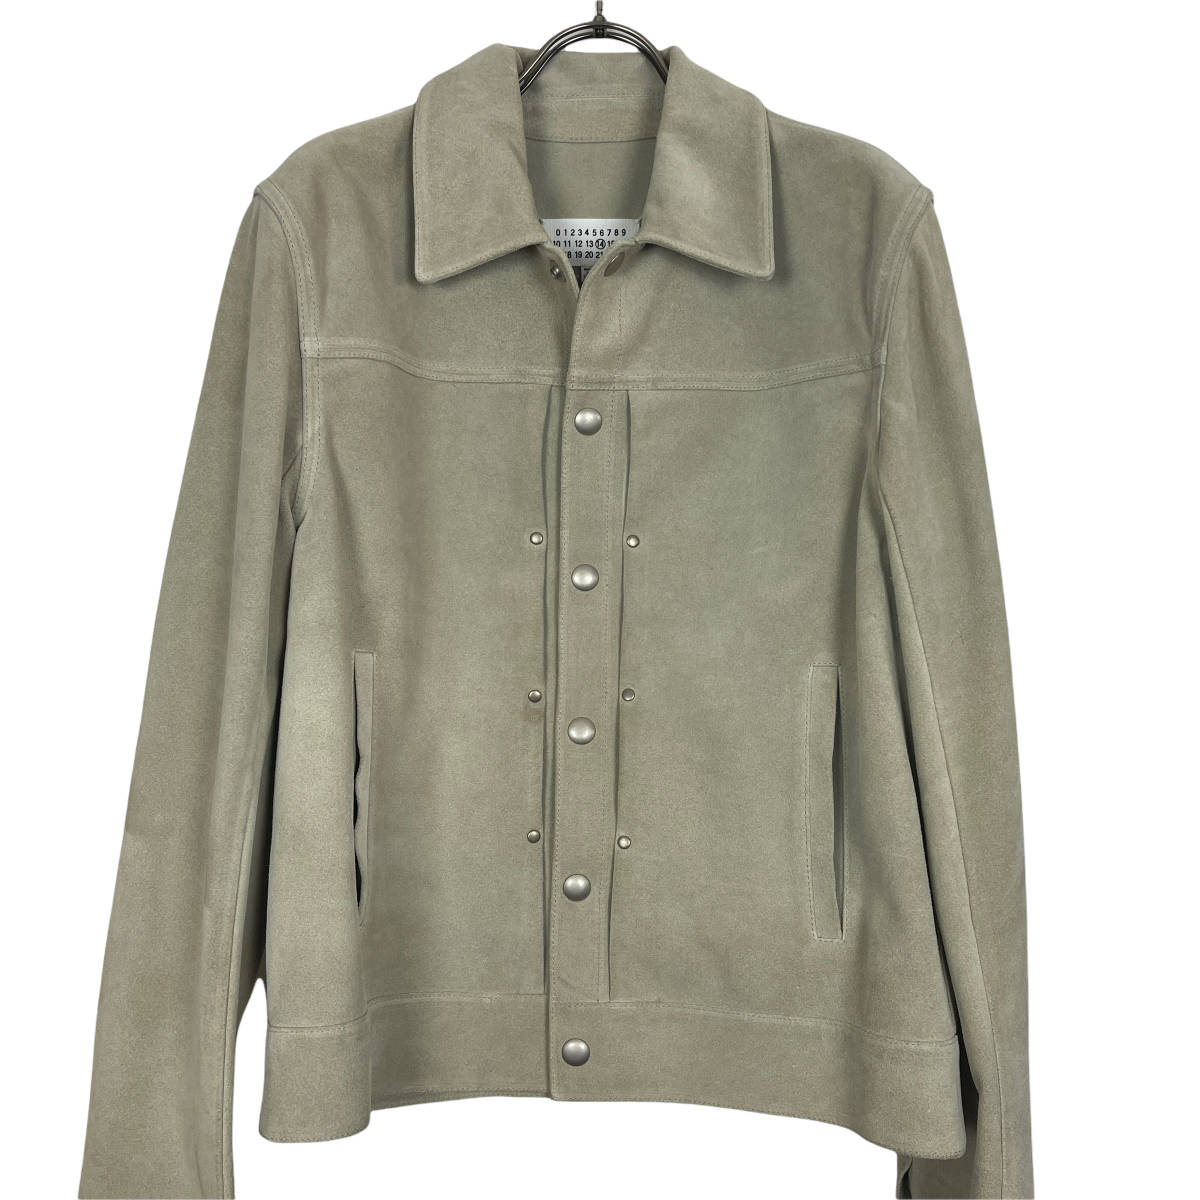 Maison Margiela(メゾン マルジェラ) leather jacket 2016 (beige)